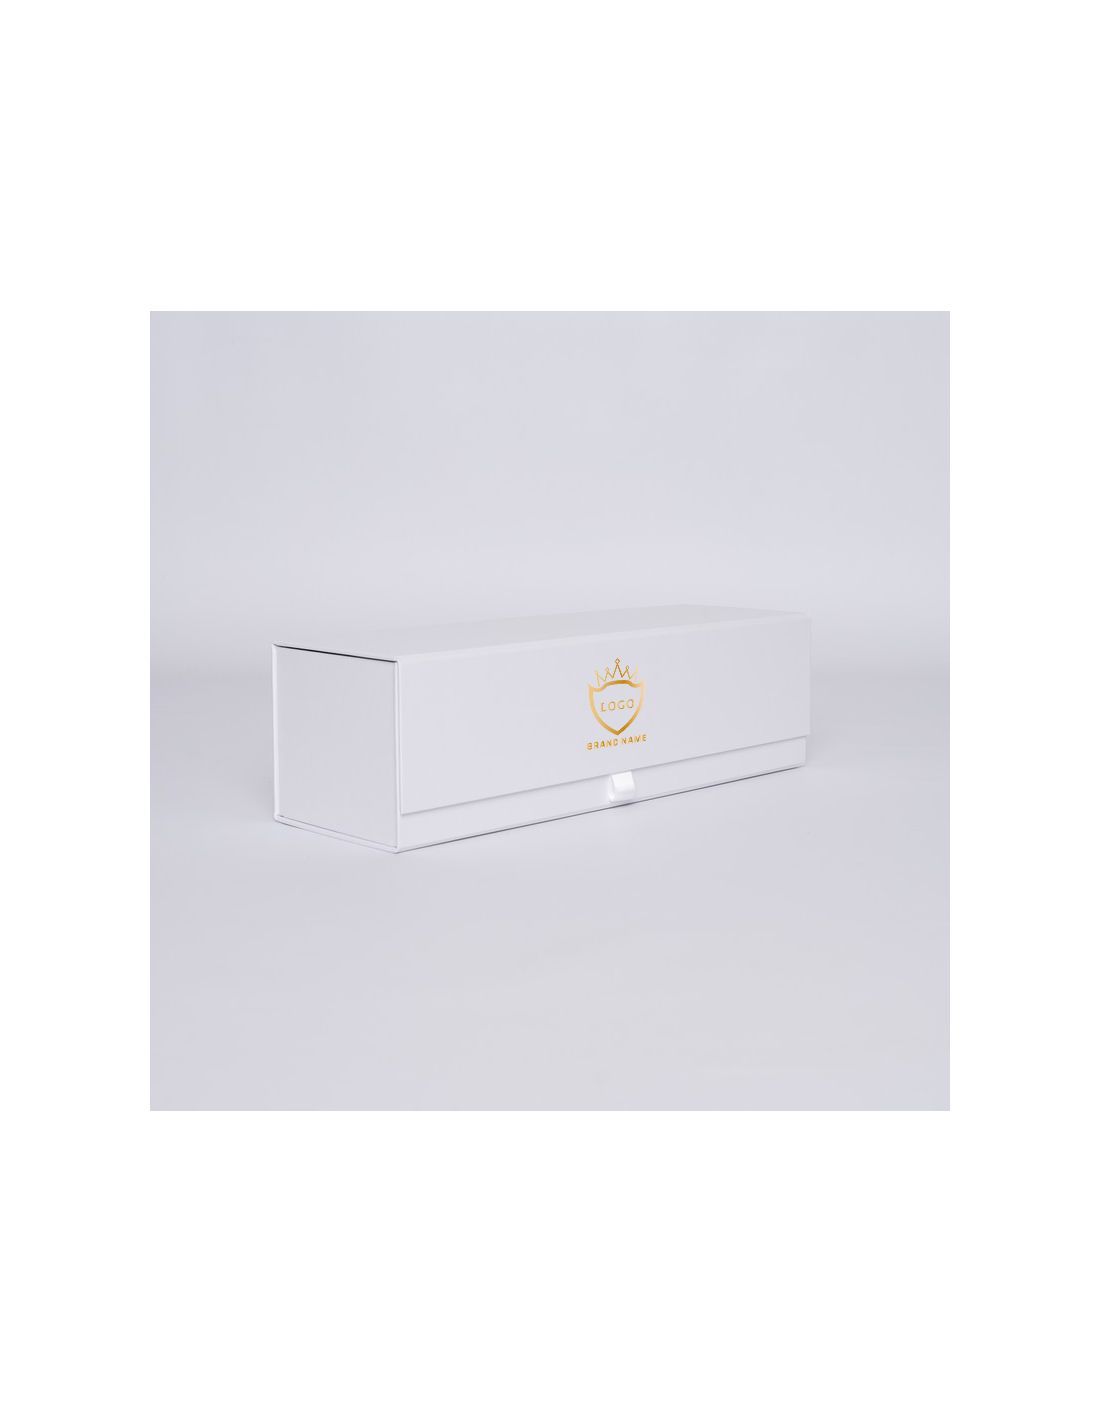 Boîte aimantée personnalisée Bottlebox 10x33x10 CM | BOTTLE BOX |BOÎTE POUR 1 BOUTEILLE | IMPRESSION À CHAUD